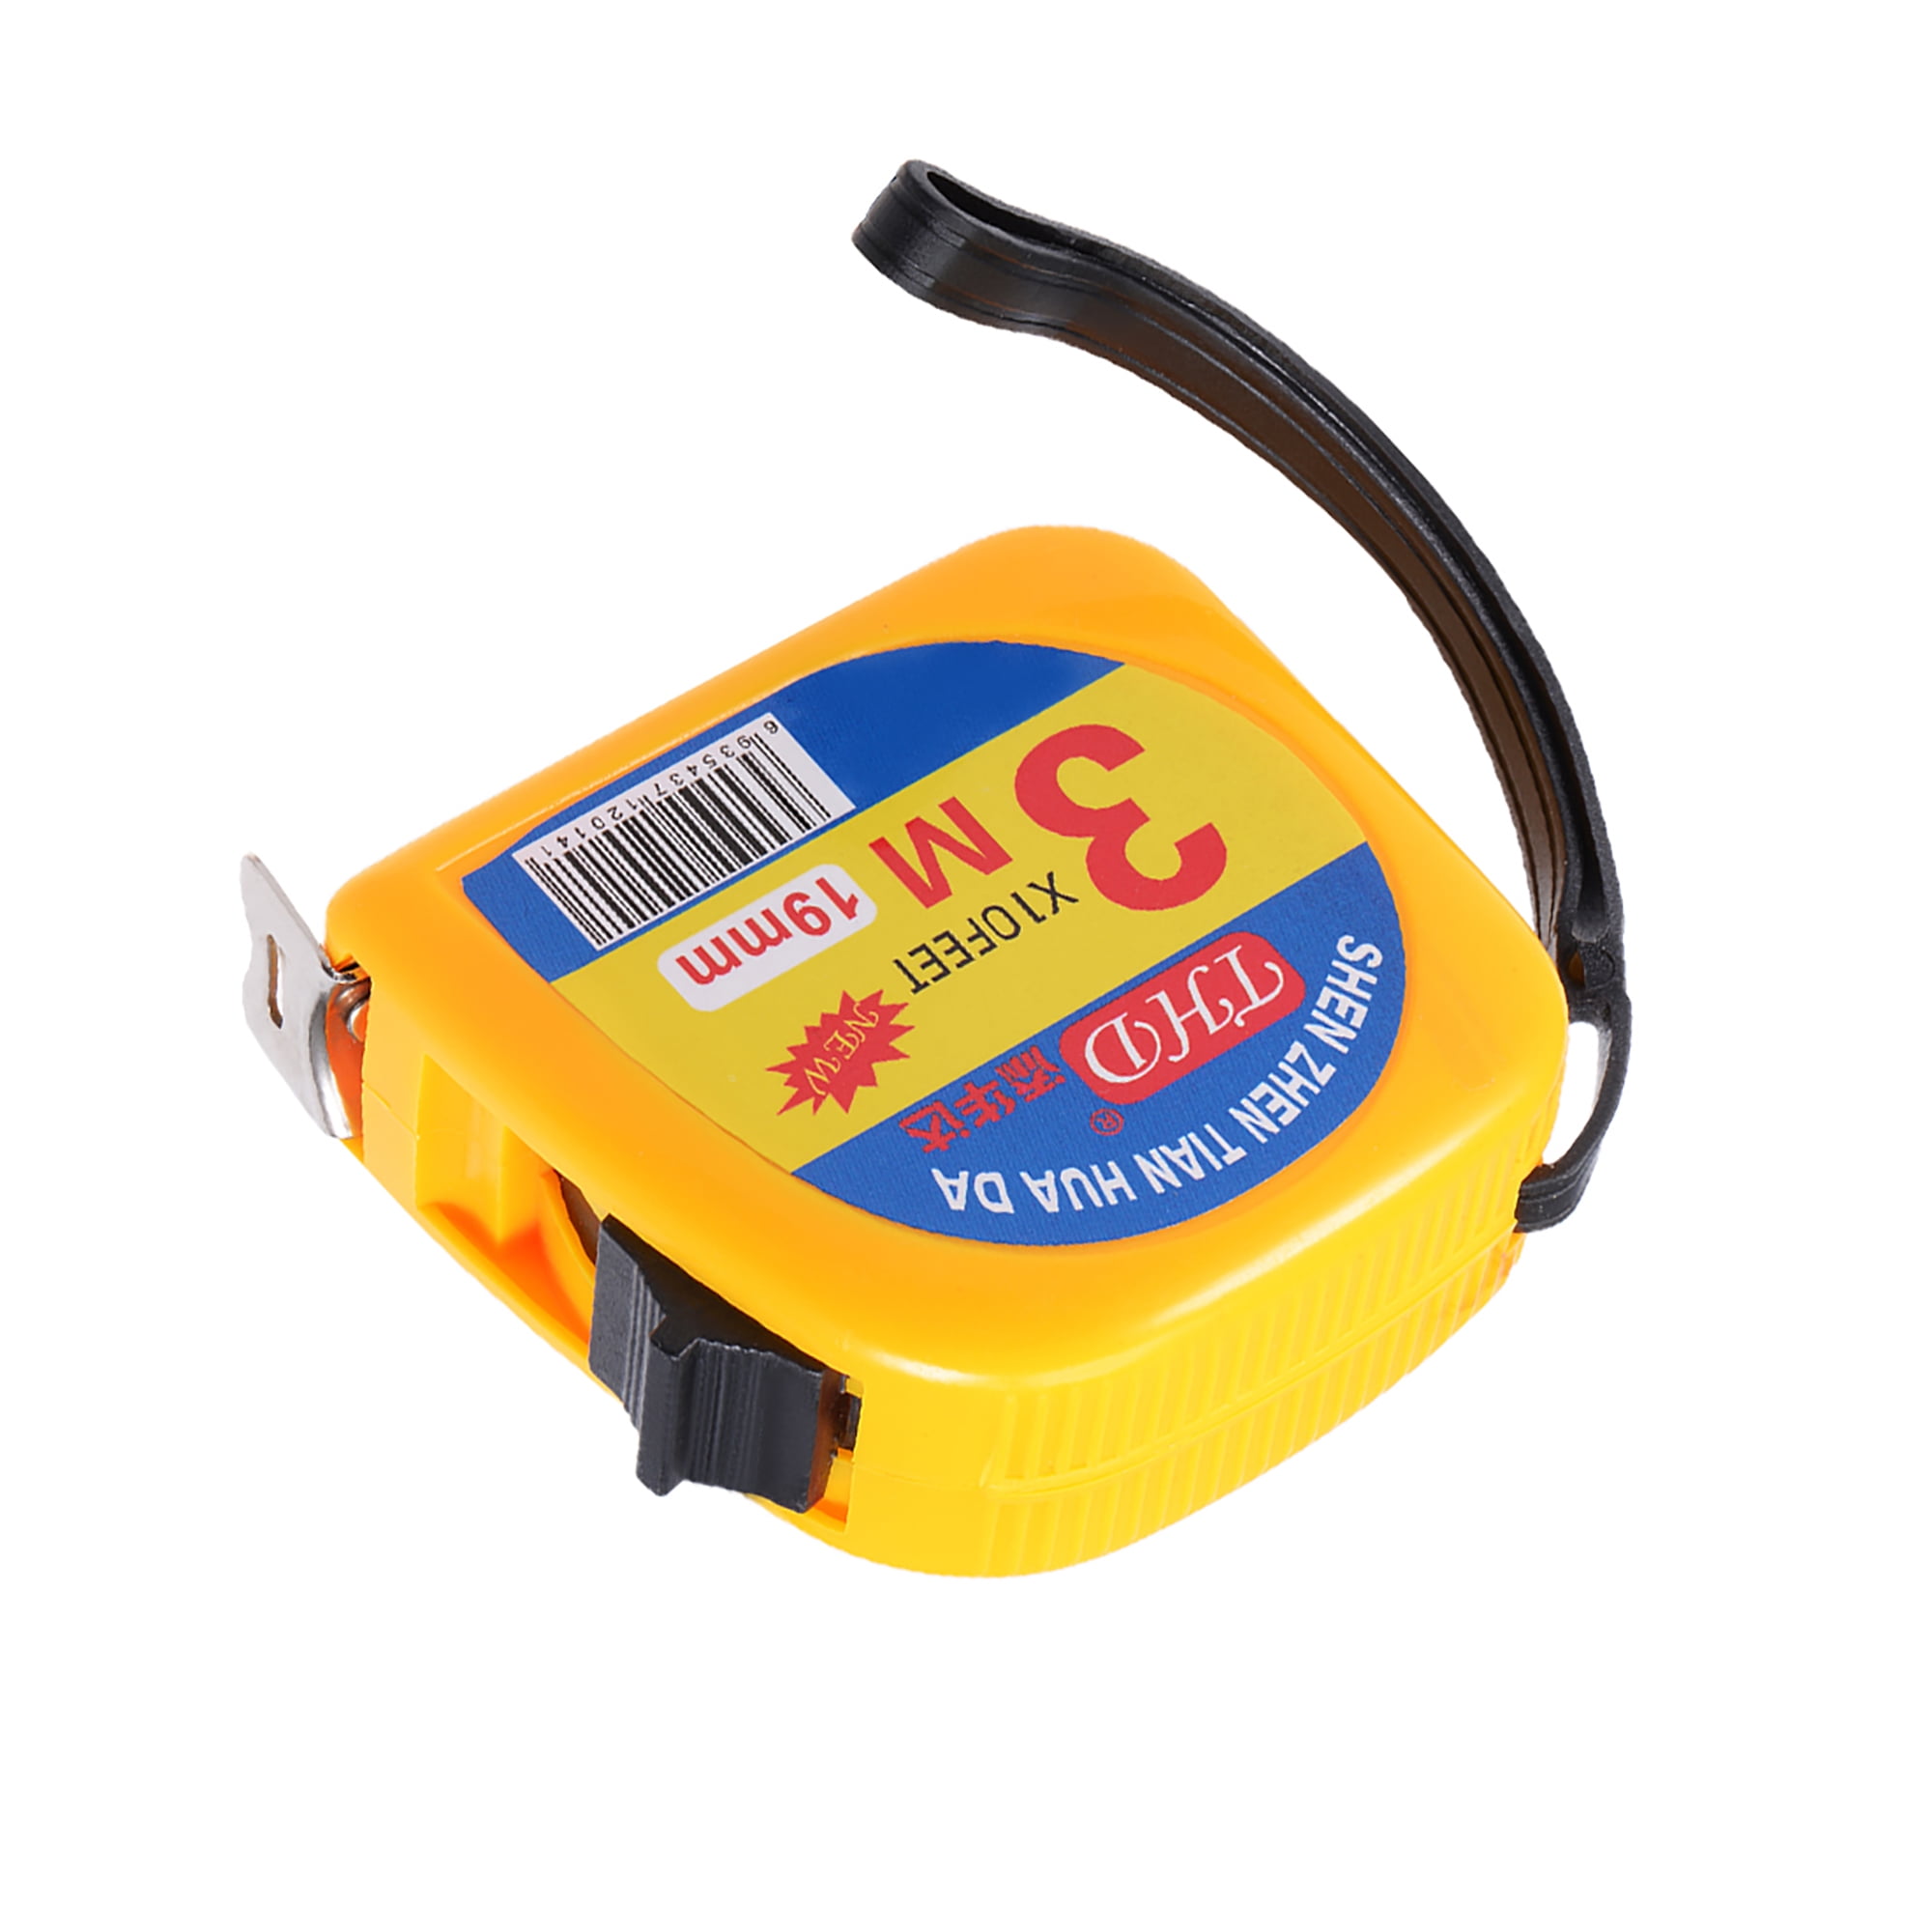 Pro® Metric Measurement Tape Metric Ruler Repositionable Kraft